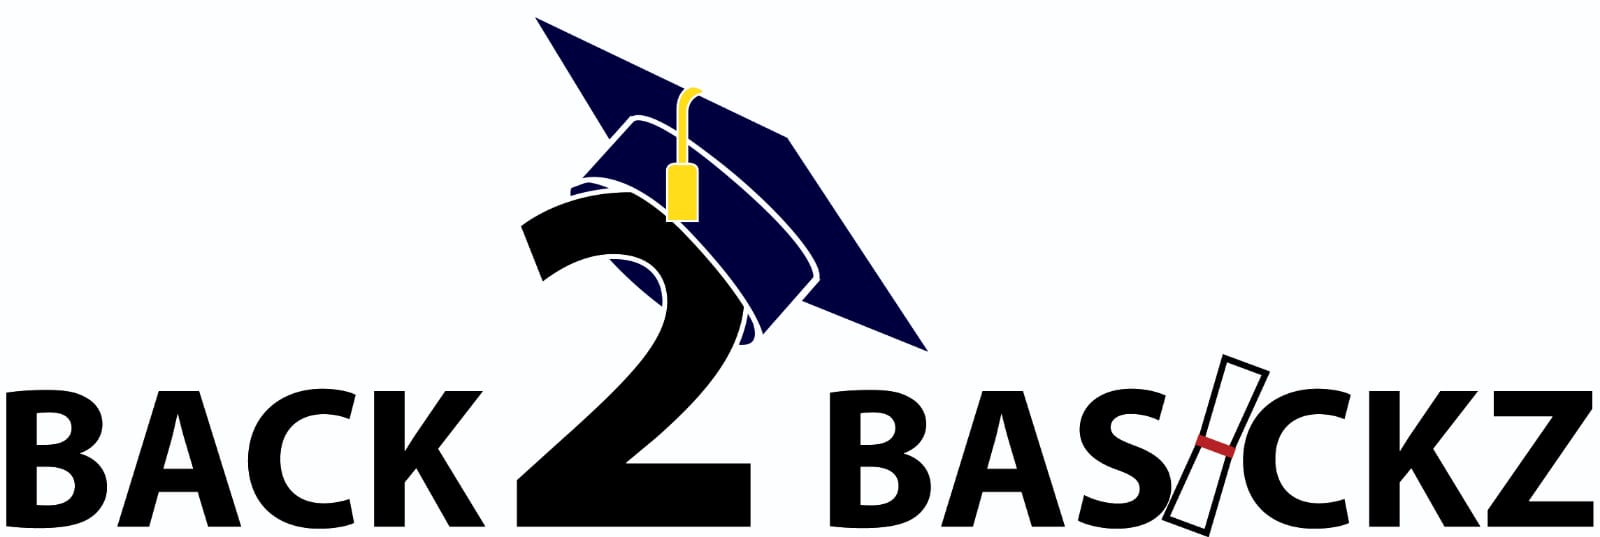 Back 2 Basickz